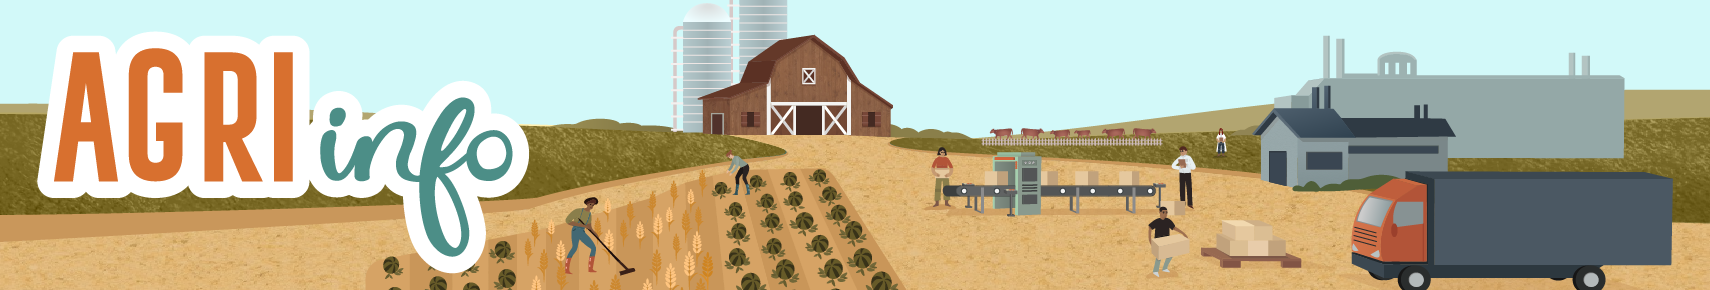 Texte AGRIinfo sur un dessin d'une ferme avec des ouvriers agricoles